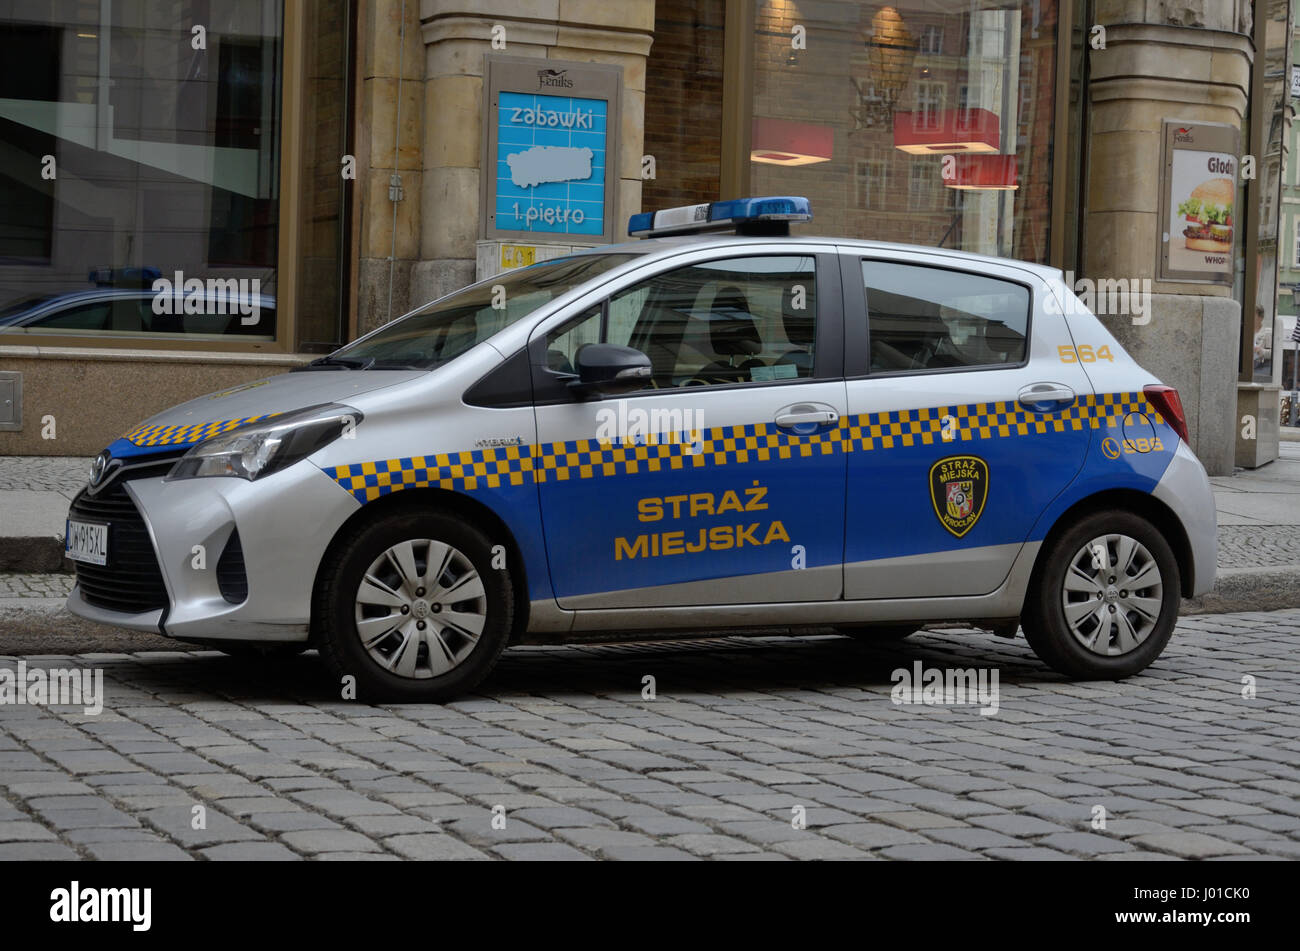 Voiture de police municipaux polonais, Wroclaw. Toyota Yaris. Miejska Straz. La Pologne. Banque D'Images